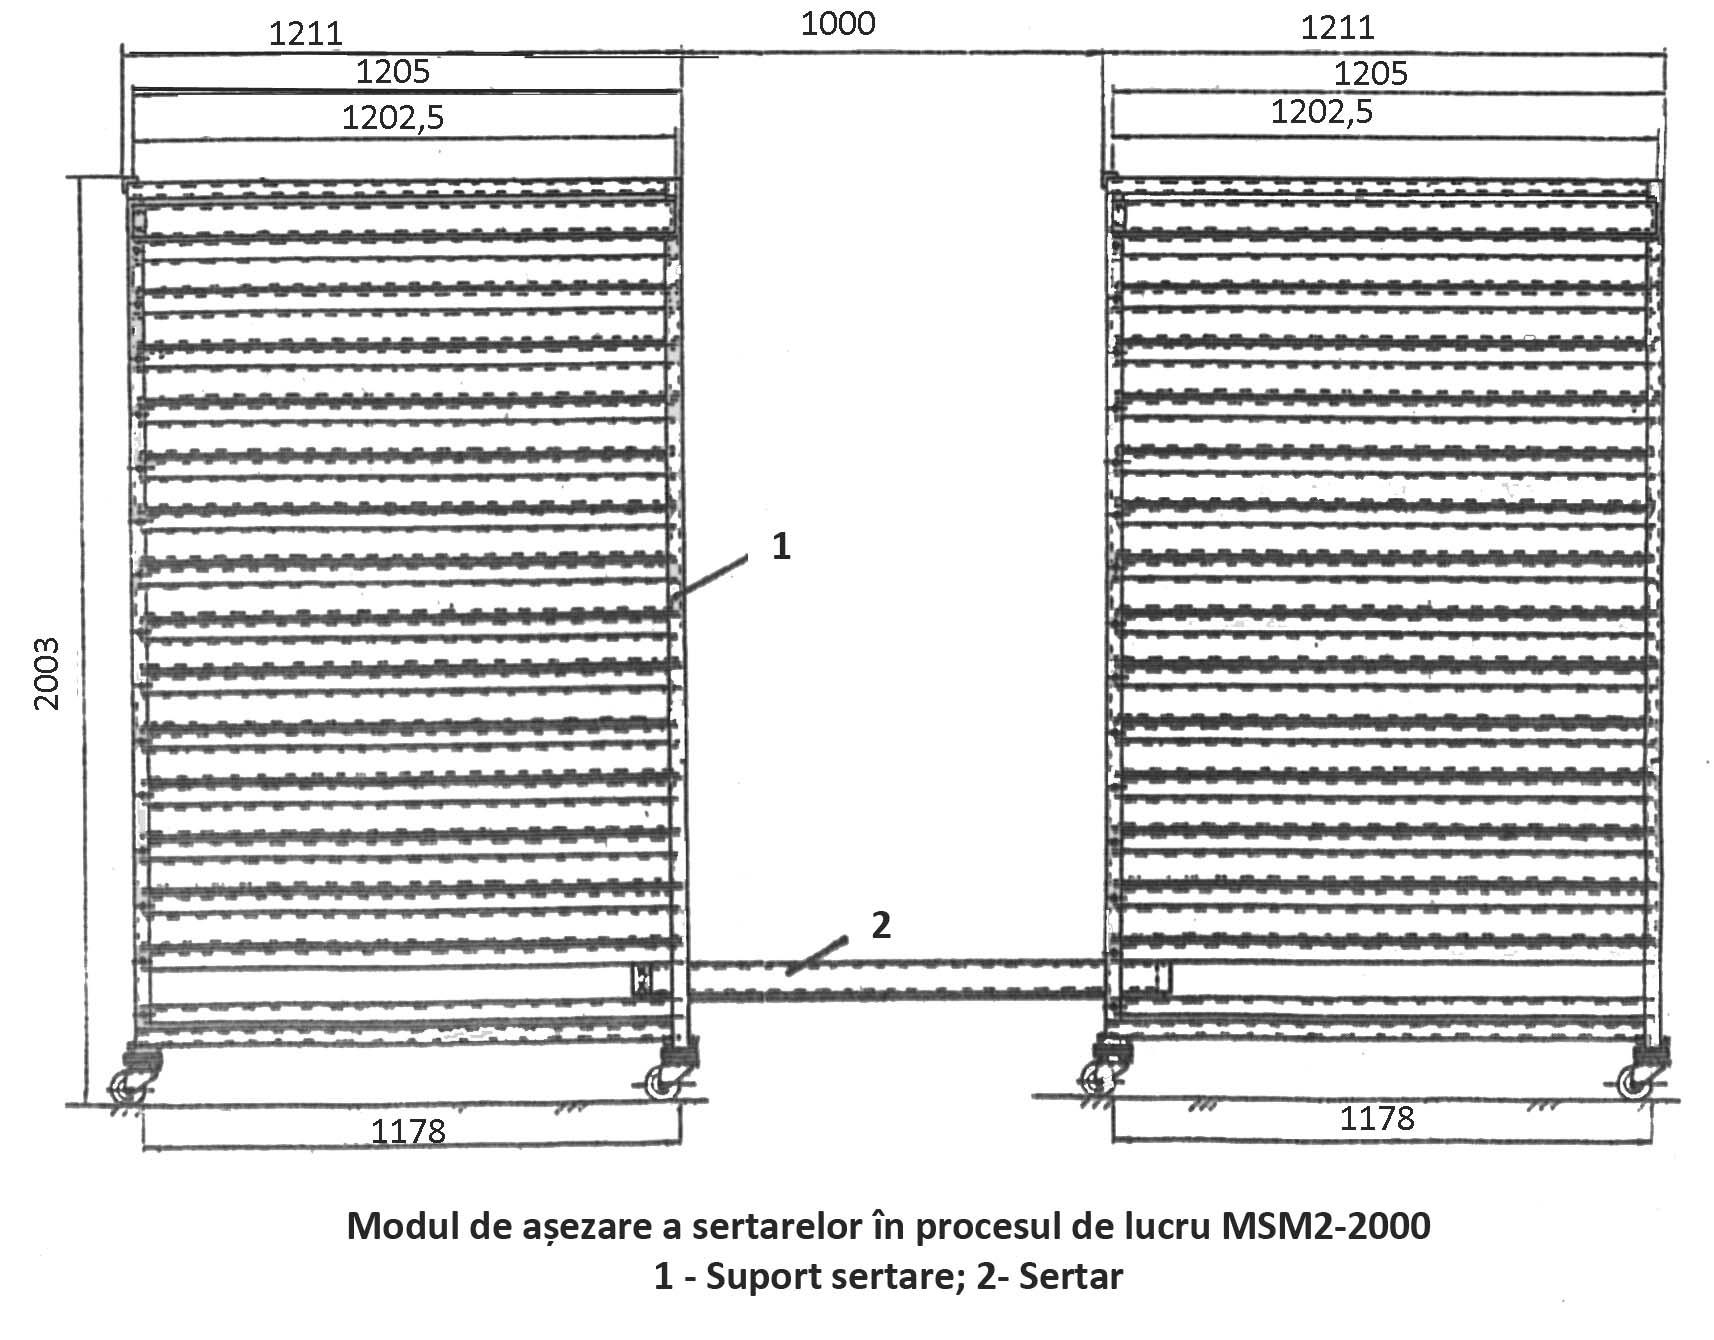 Modulul sericicol multifuncţional tip MSM2-2000